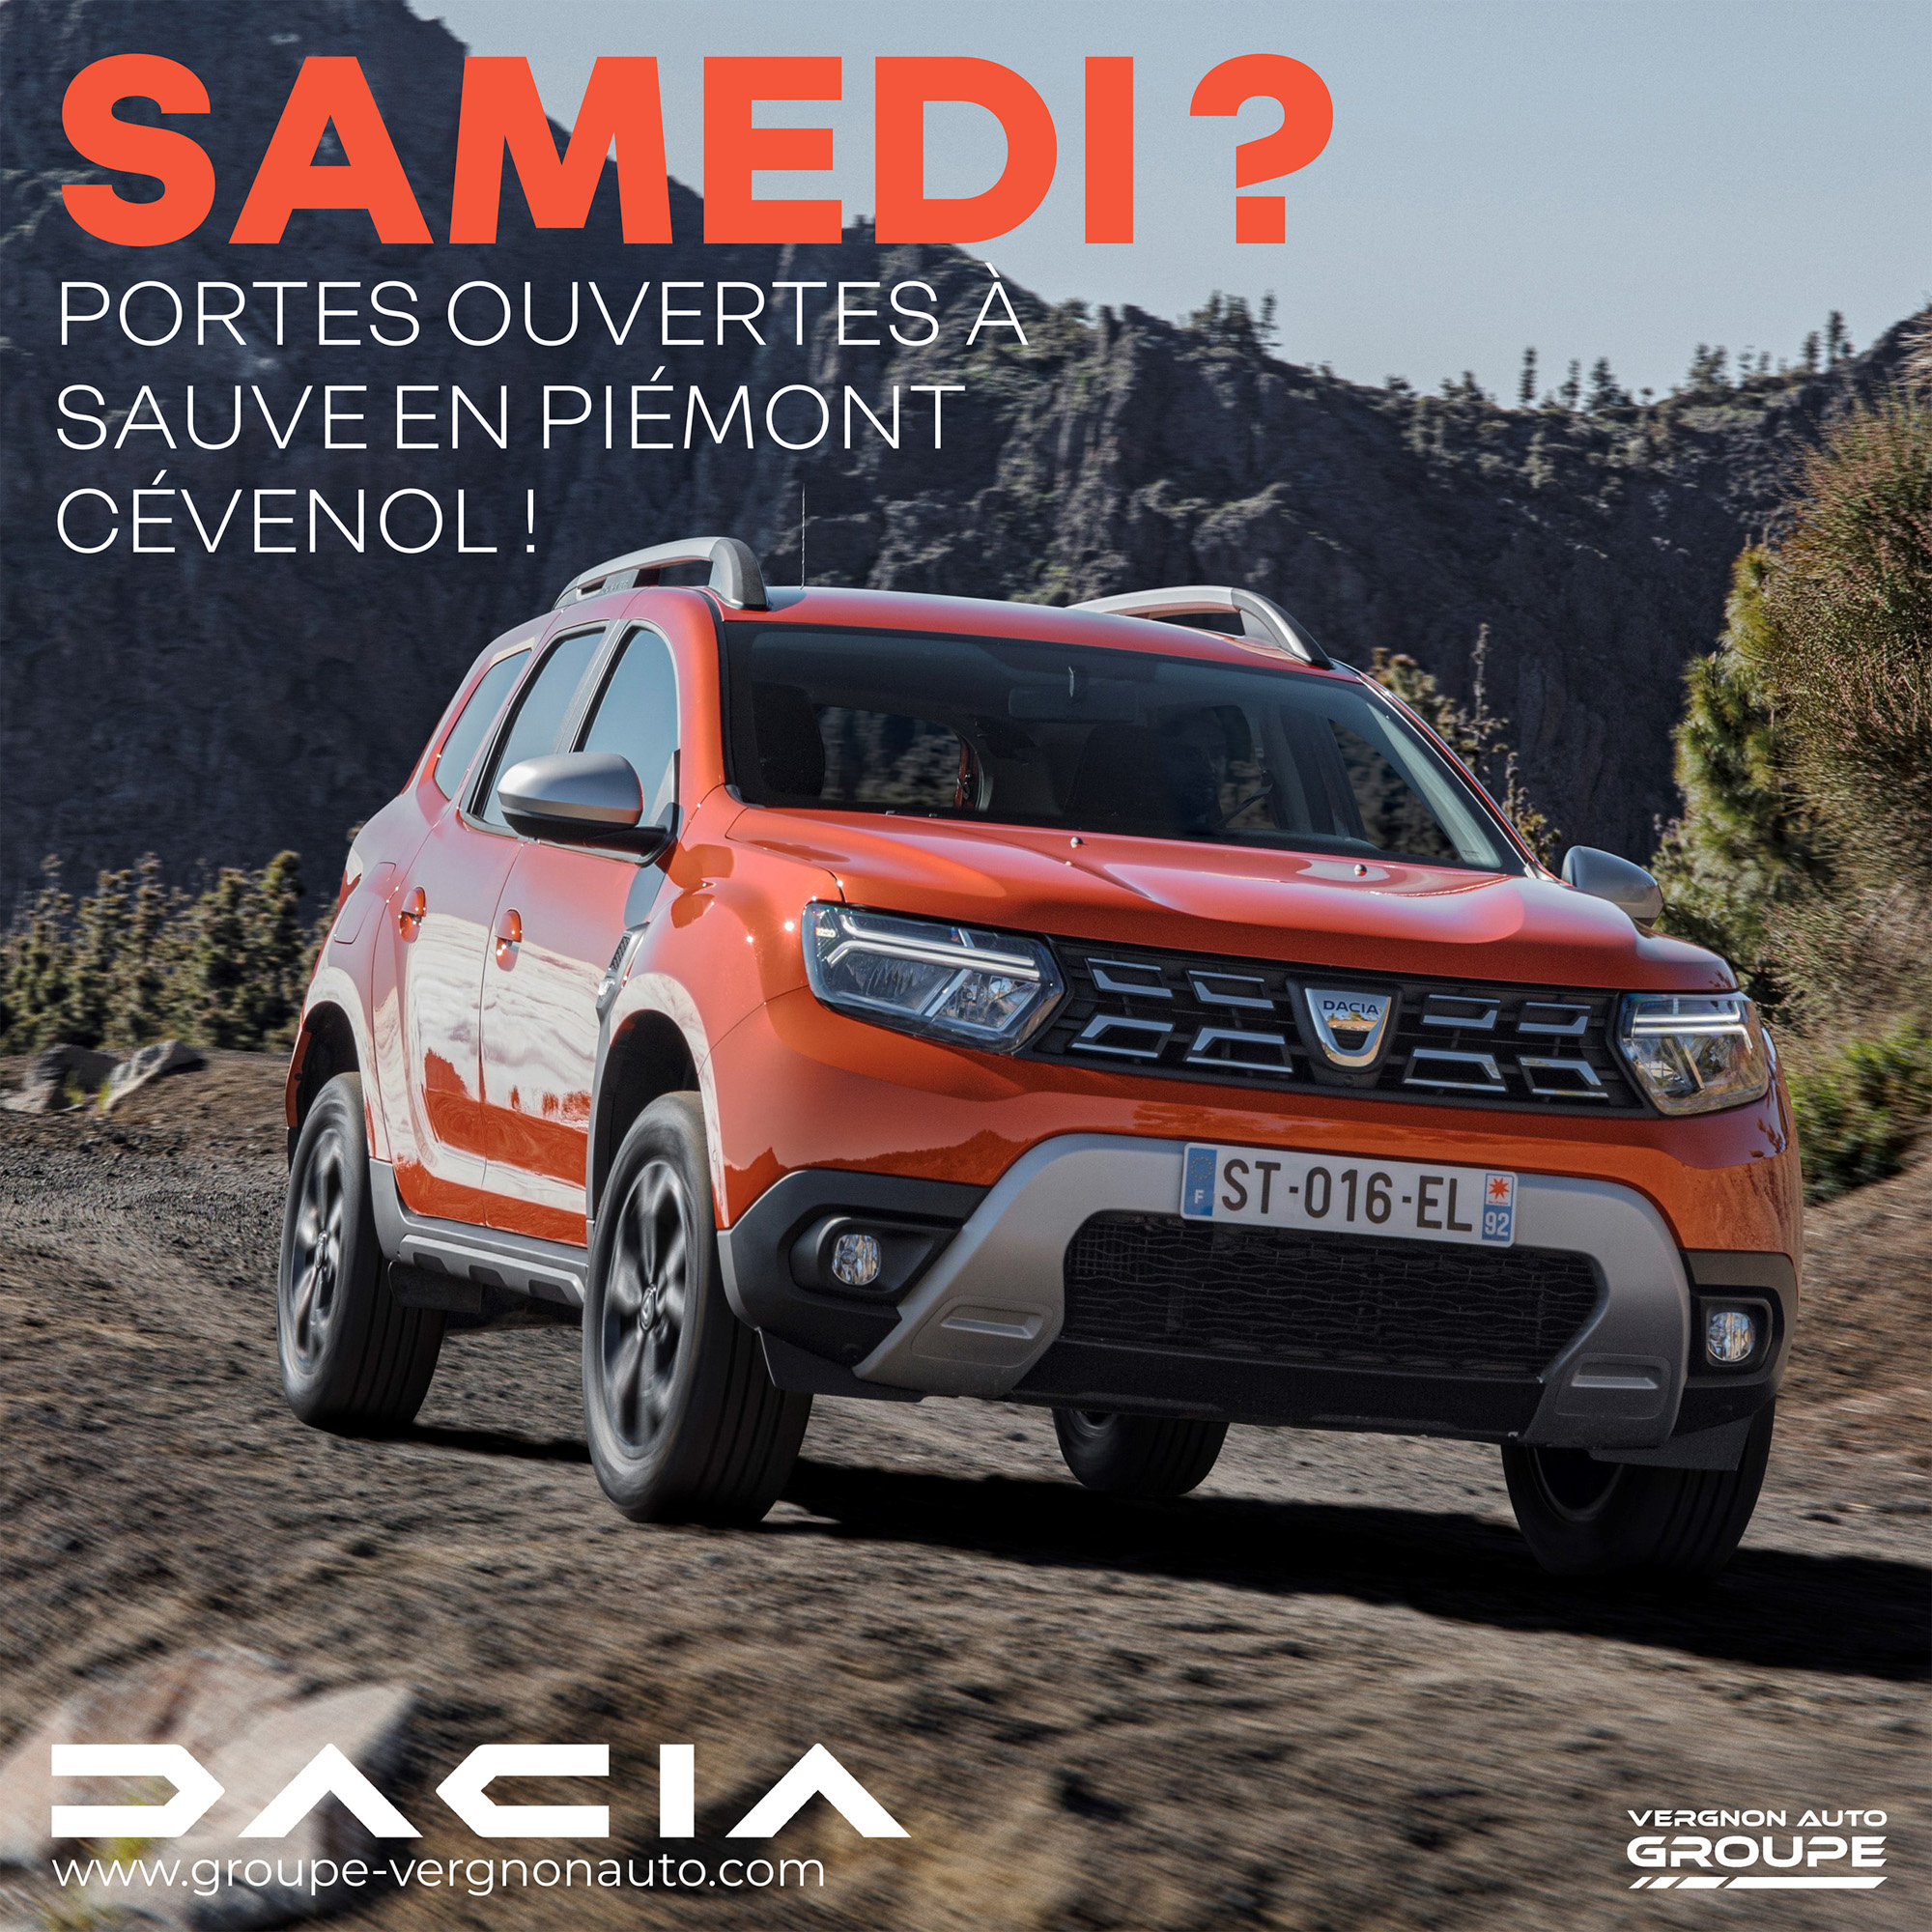 Samedi 16 octobre 2021, c'est portes ouvertes Dacia à Sauve, en Piémont cévenol